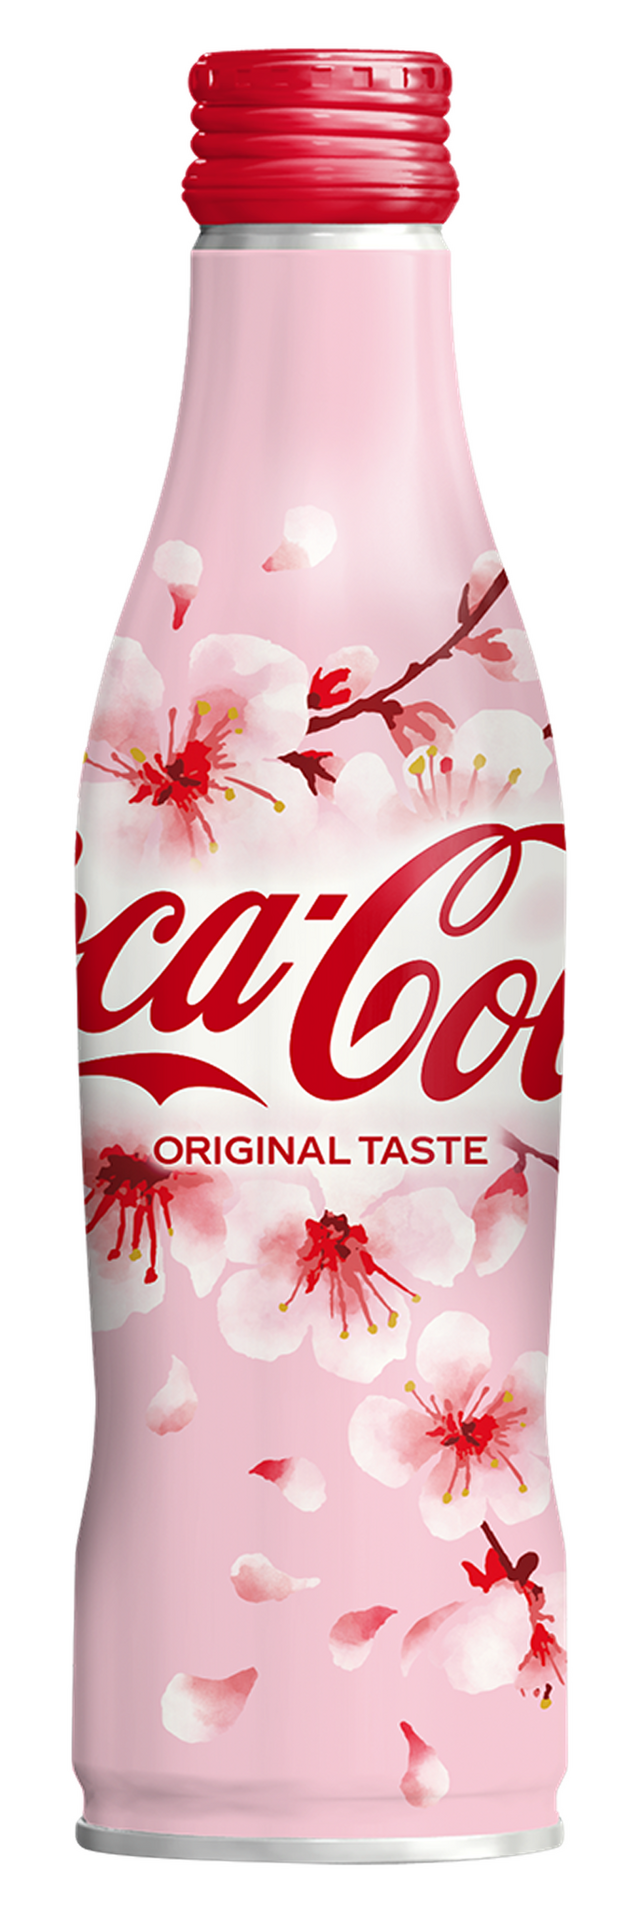 コカ・コーラに桜デザイン！期間限定で販売開始